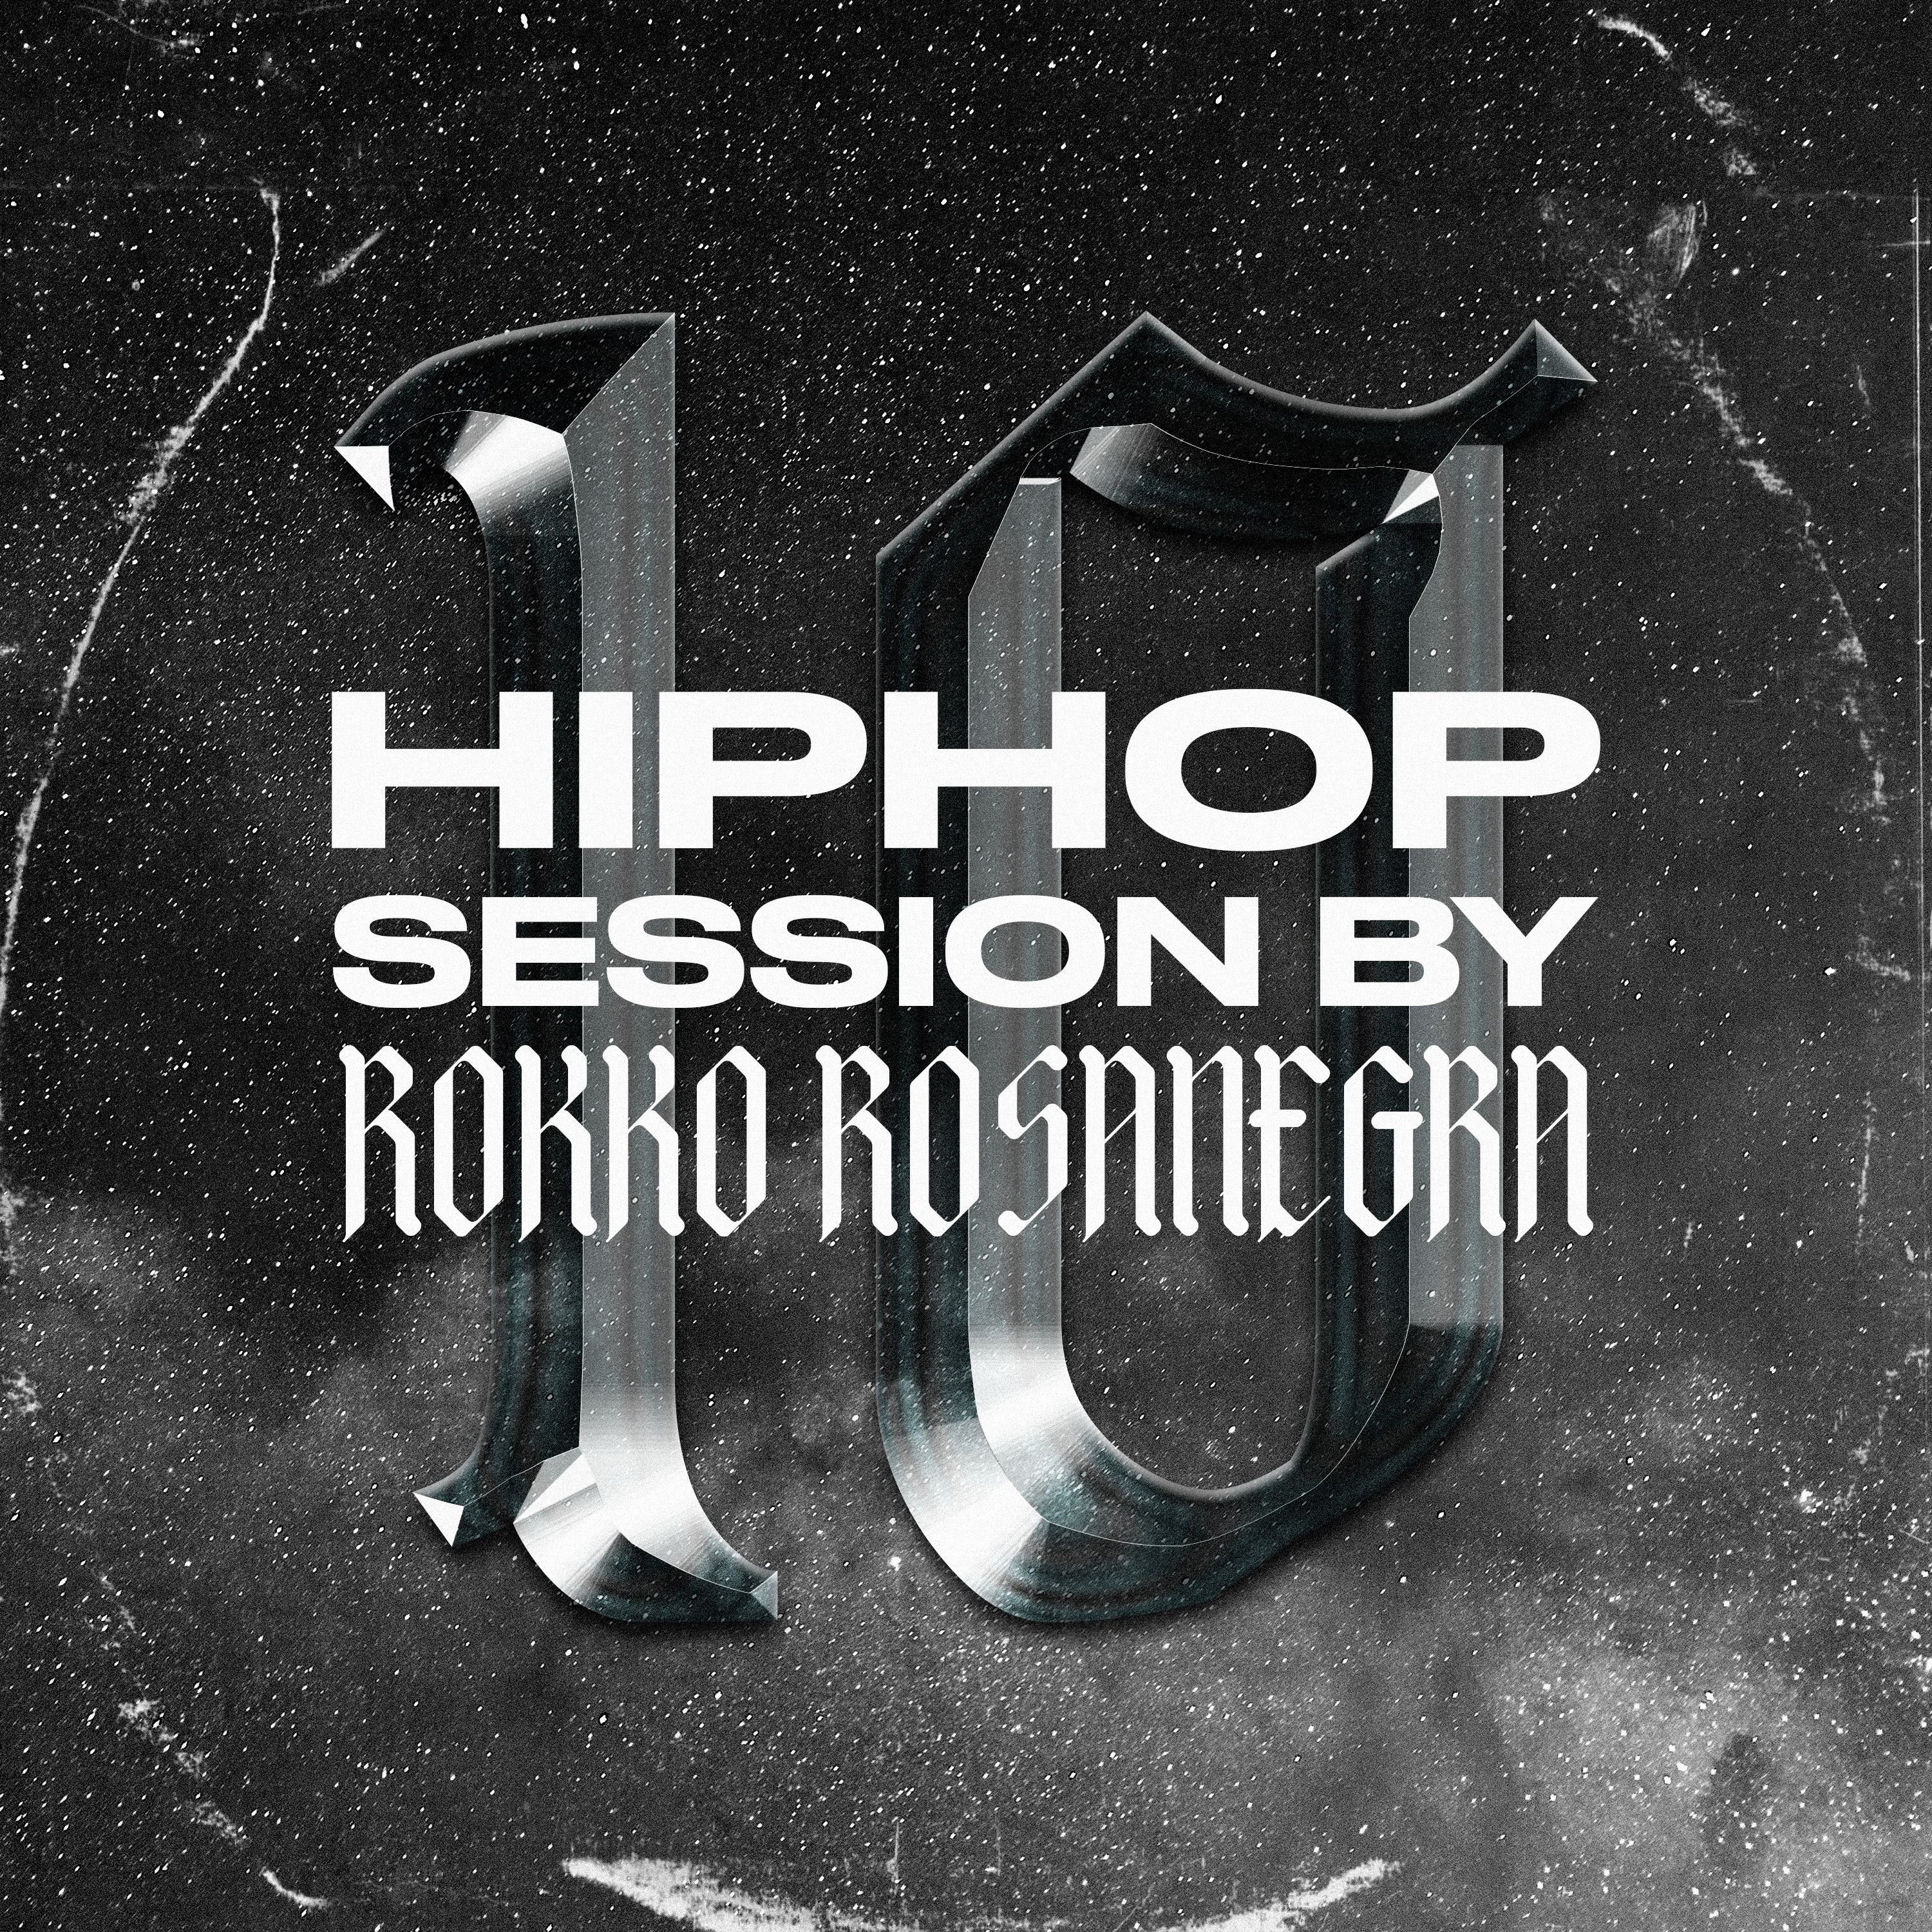 Luchdaich sìos HIP HOP SESSION 10 (DJ ROKKO ROSANEGRA)